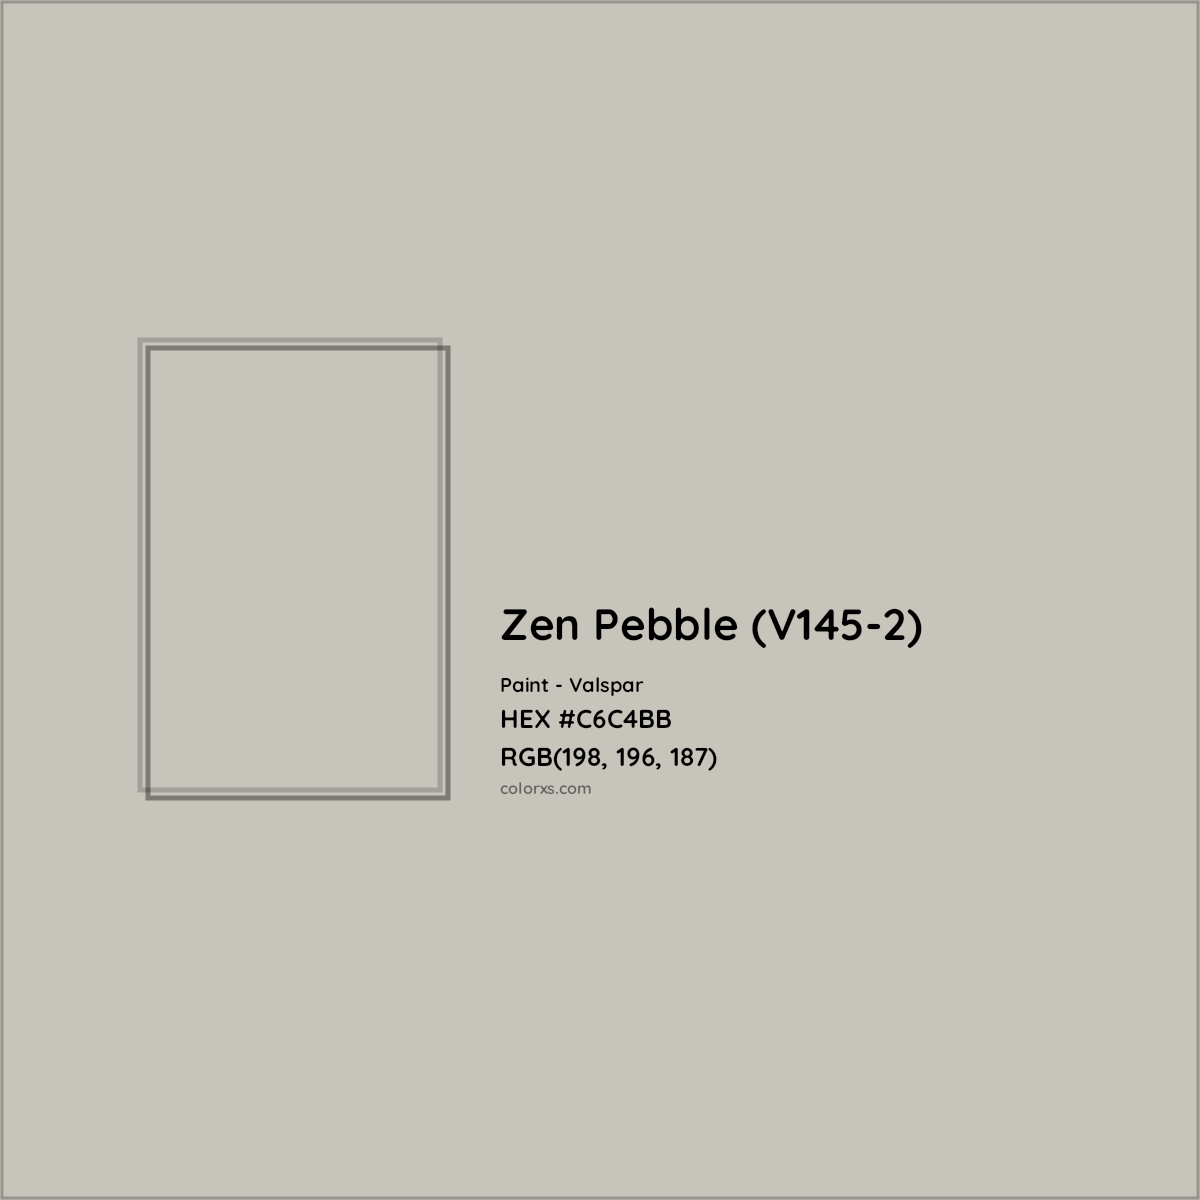 HEX #C6C4BB Zen Pebble (V145-2) Paint Valspar - Color Code